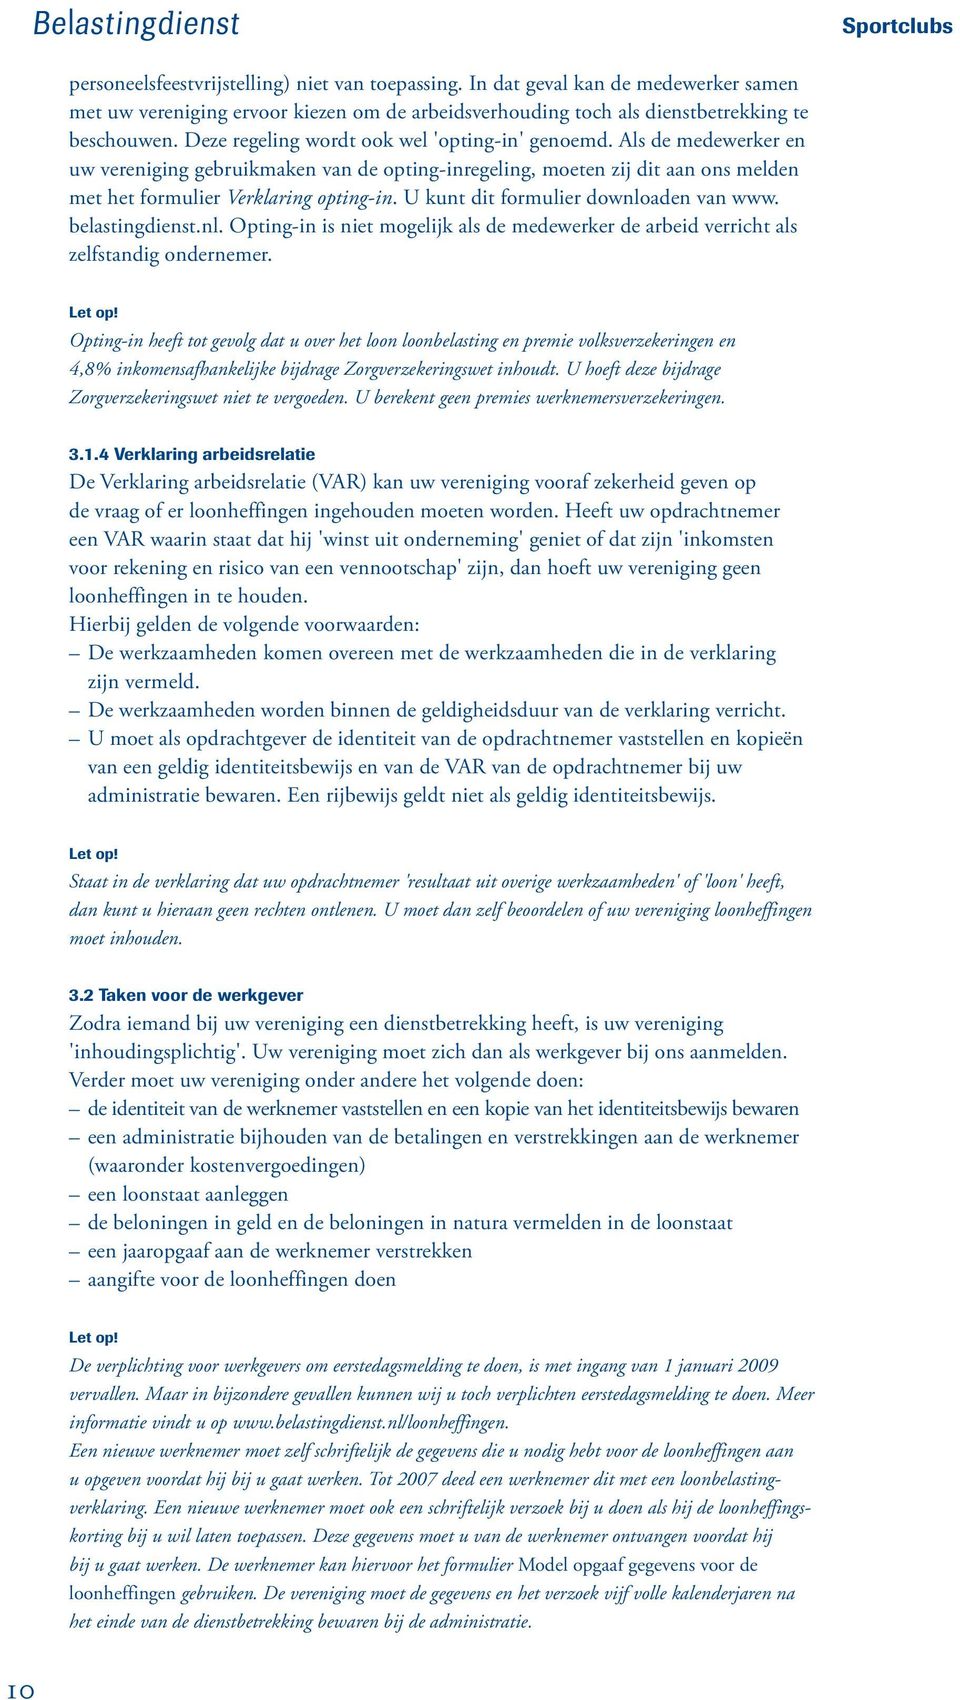 U kunt dit formulier downloaden van www. belastingdienst.nl. Opting-in is niet mogelijk als de medewerker de arbeid verricht als zelfstandig ondernemer.